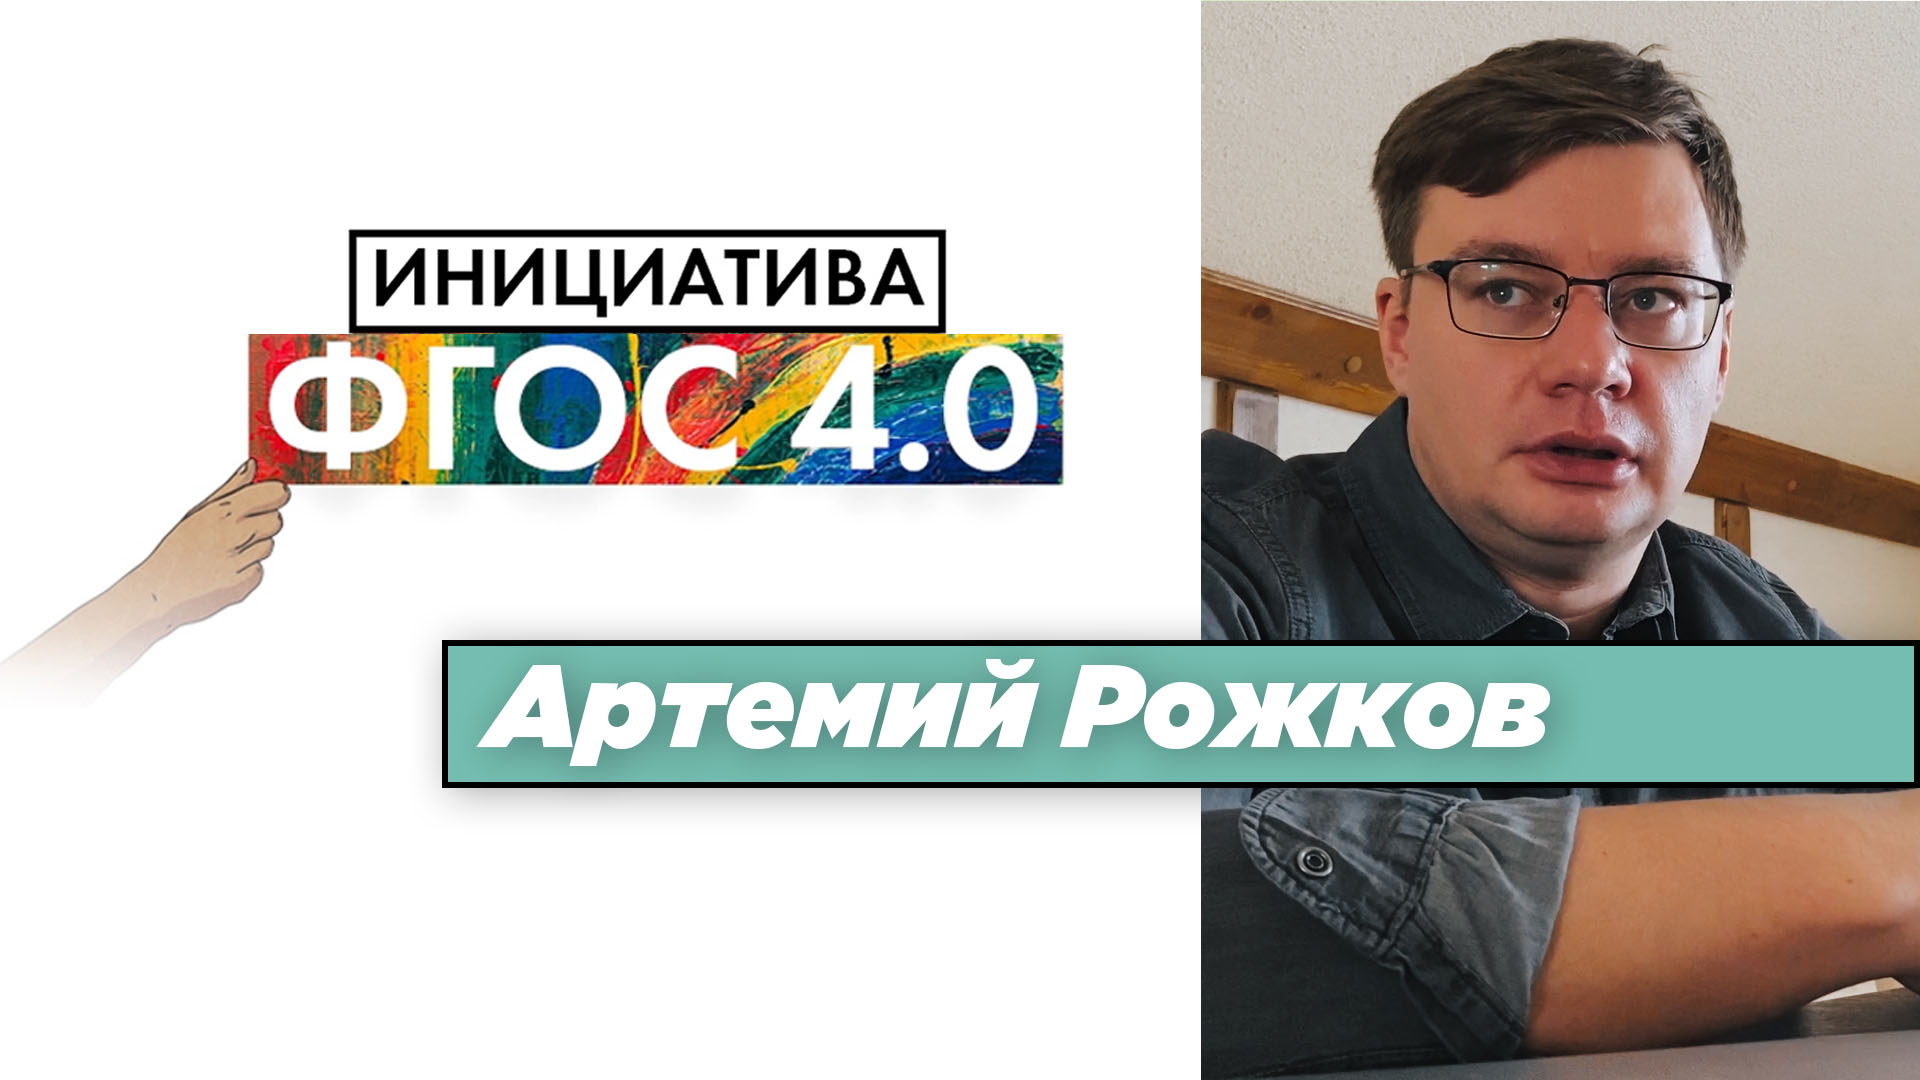 Артемий Рожков: «Инициатива ФГОС 4.0». Результаты